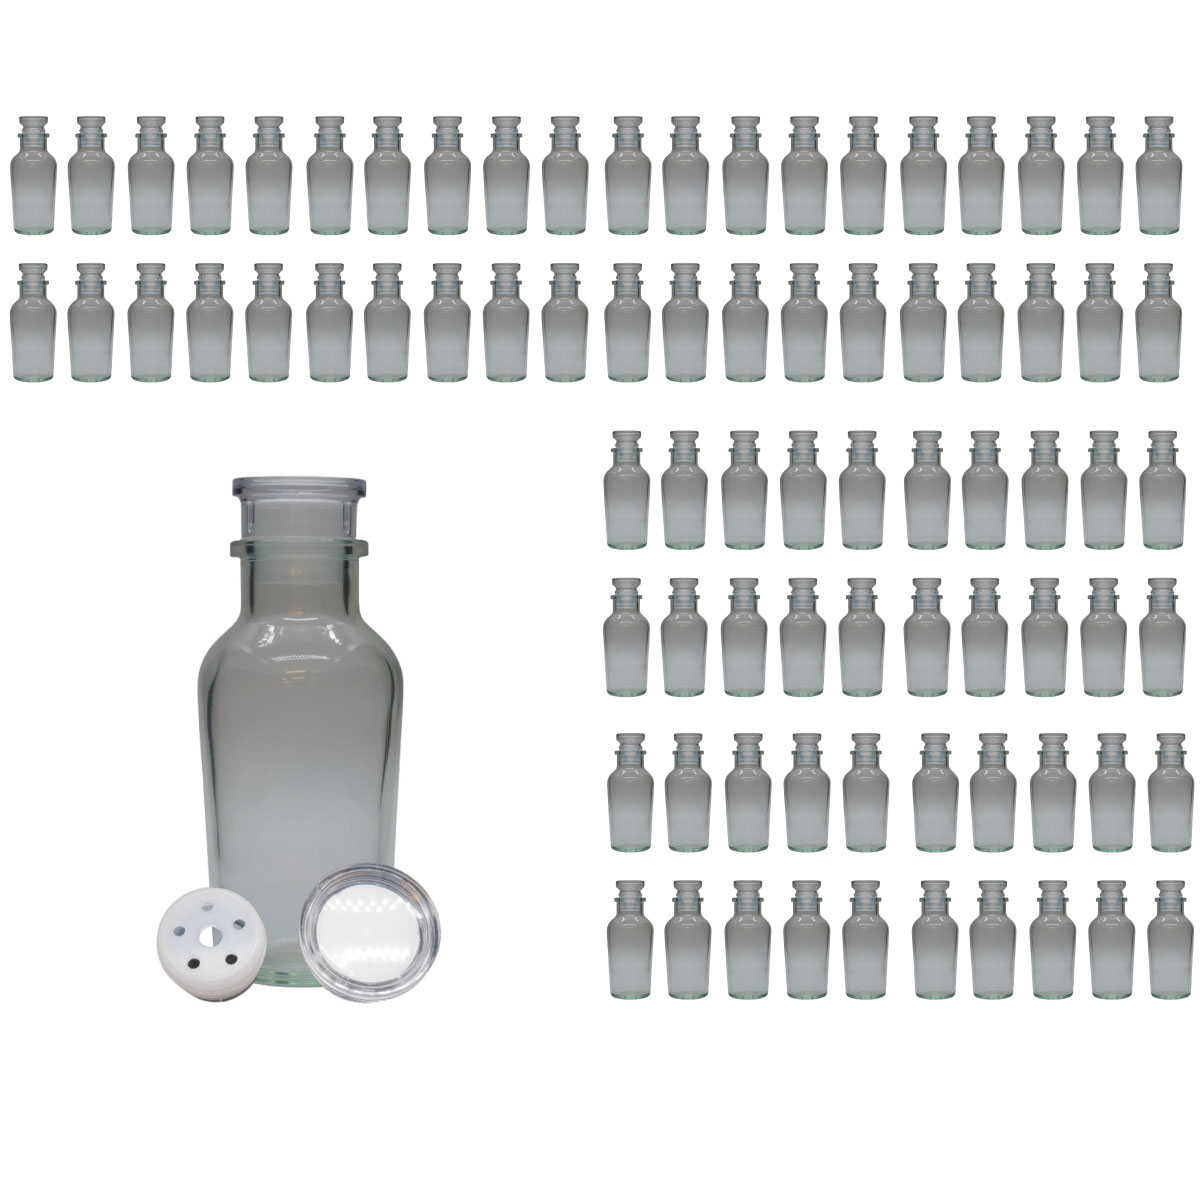 スパイスボトル ガラス瓶 ワグナー 120ml 80本 カートン 業務用 日本製 調味料入れ ガラス栓 か フリフリ中栓 が選べます シンプル おしゃれ な デザイン 3